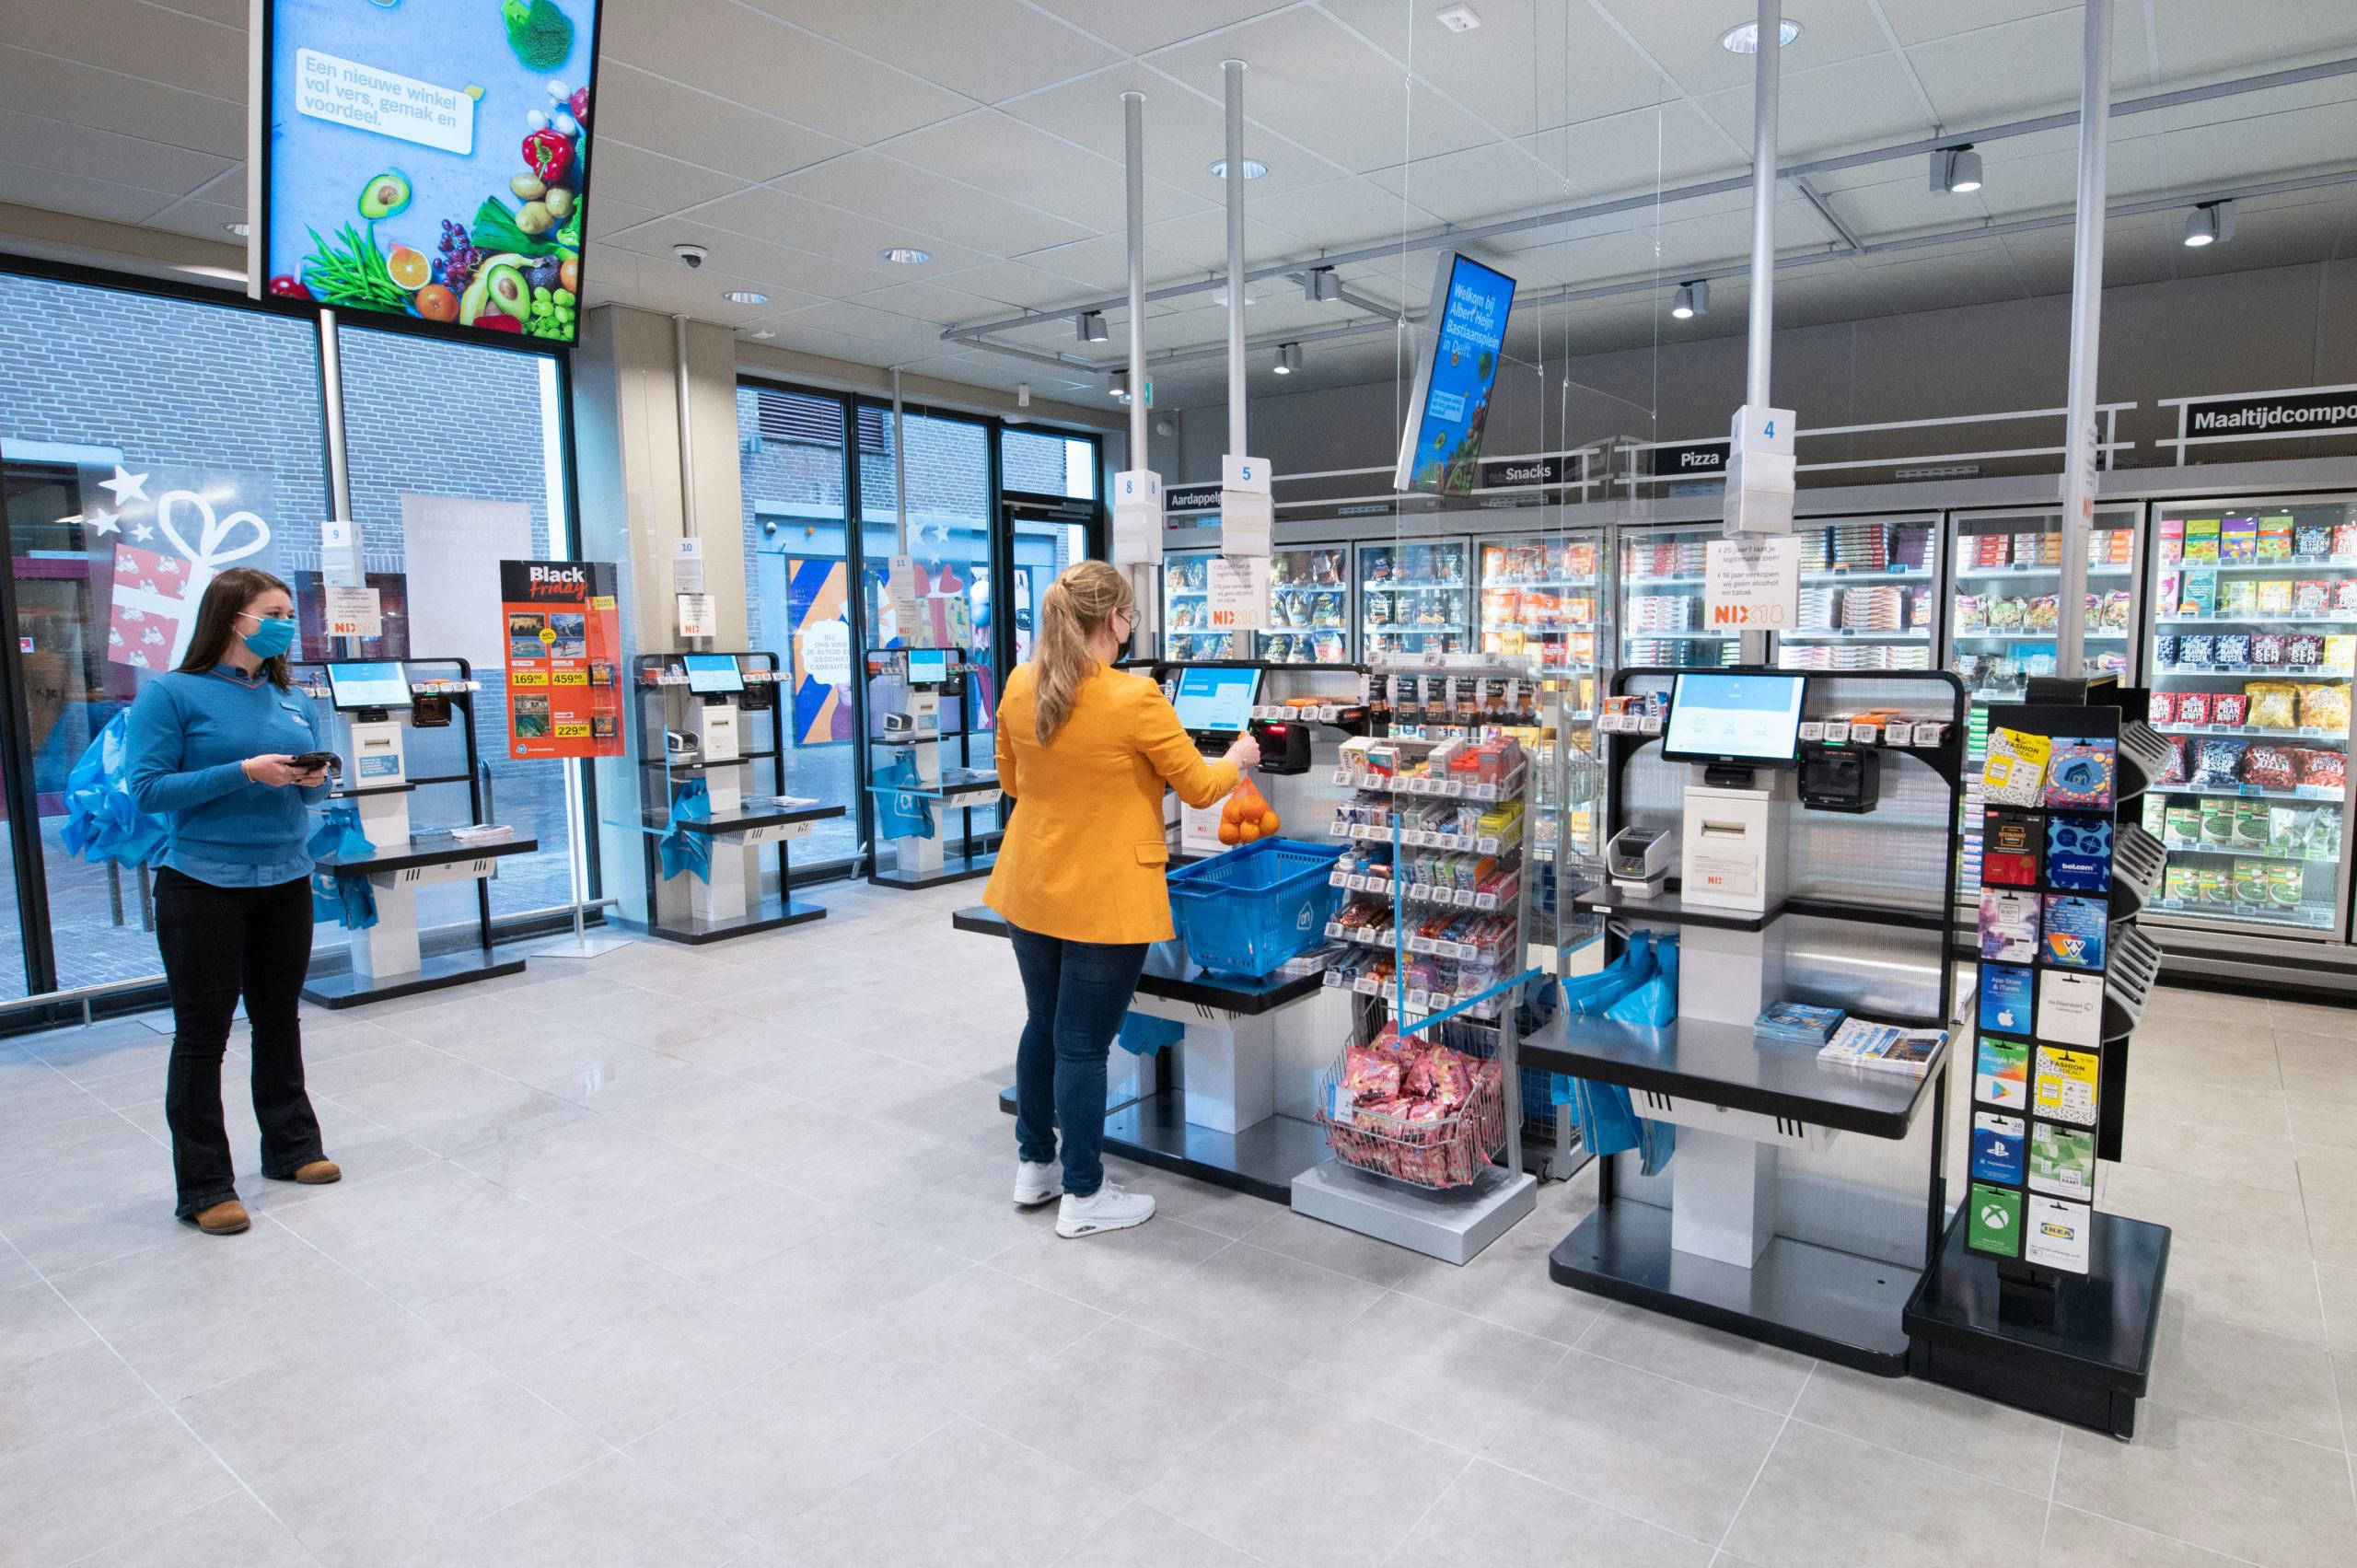 De zelfscankassa's in de supermarkt. Foto: Albert Heijn